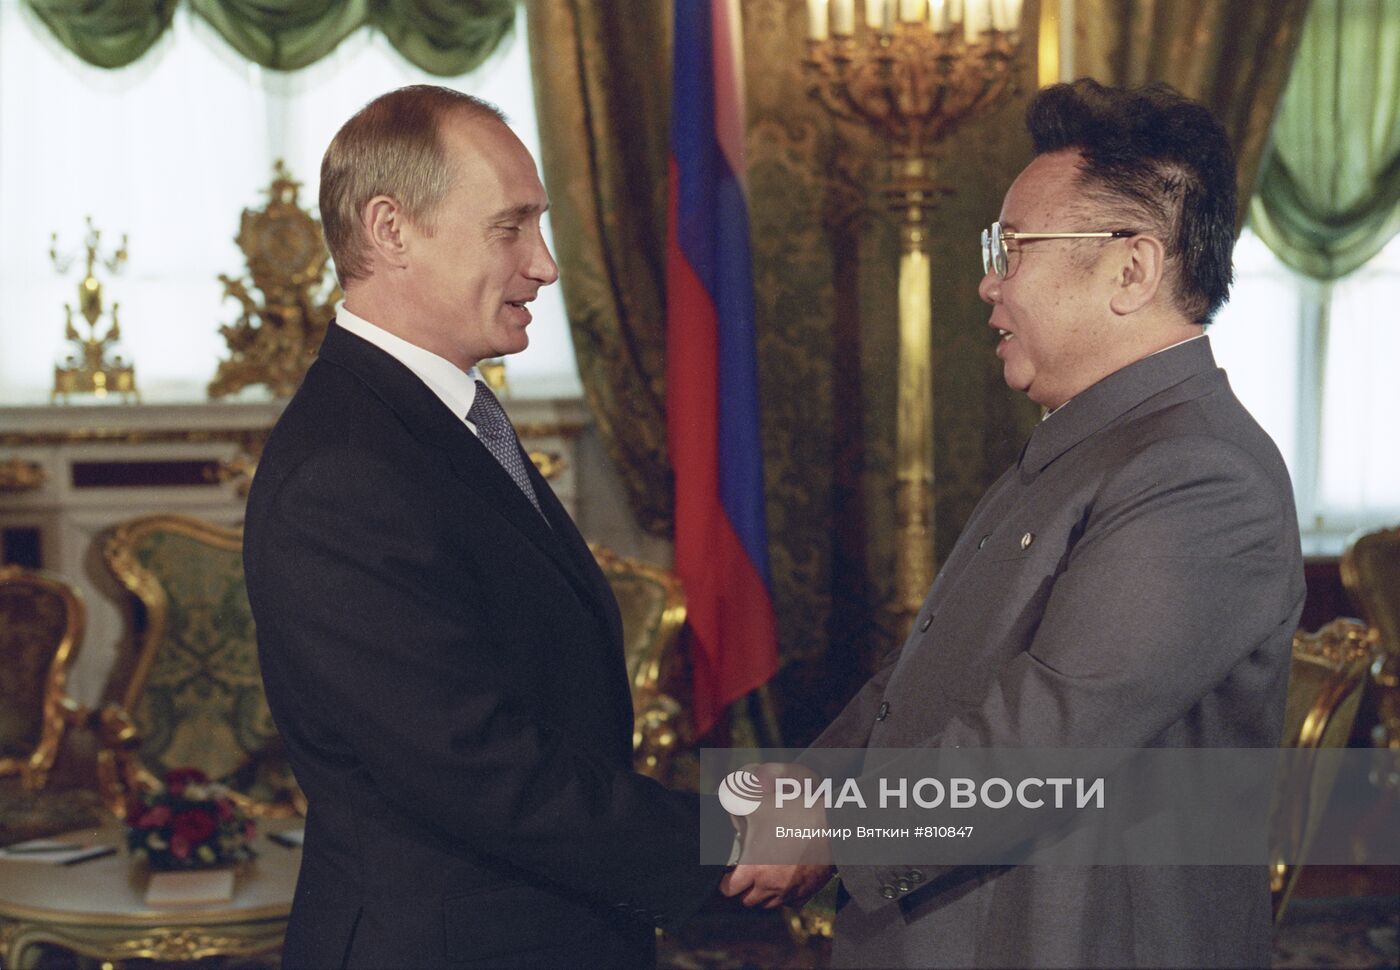 Руководитель КНДР Ким Чен Ир во время визита в Россию